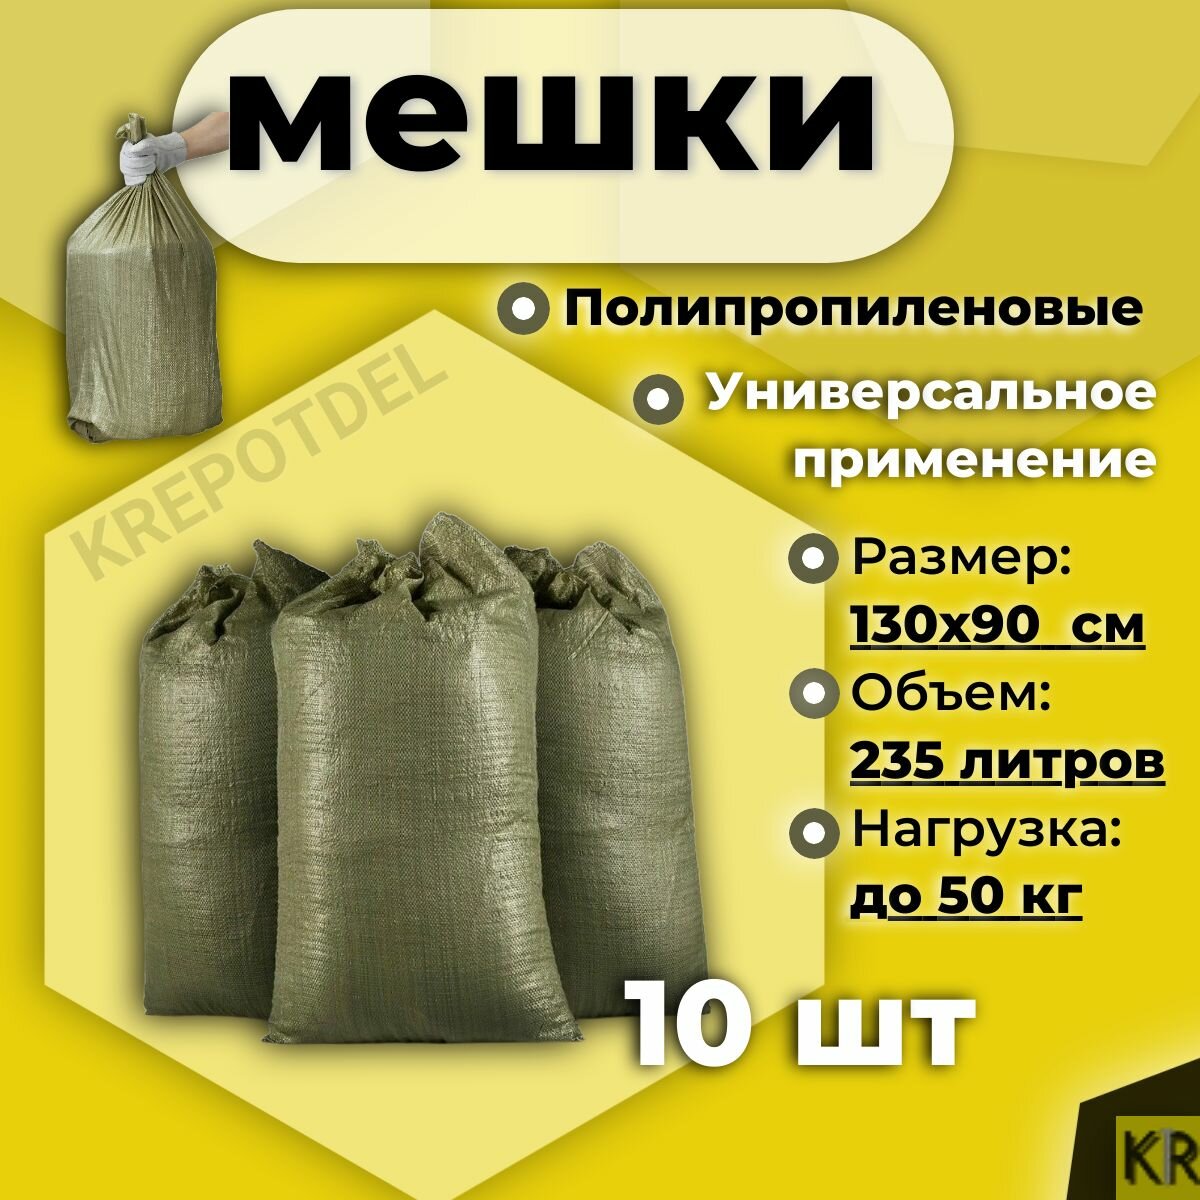 Мешки для строительного мусора хранения и переезда 90 х 130 см до 50 кг 10 шт.